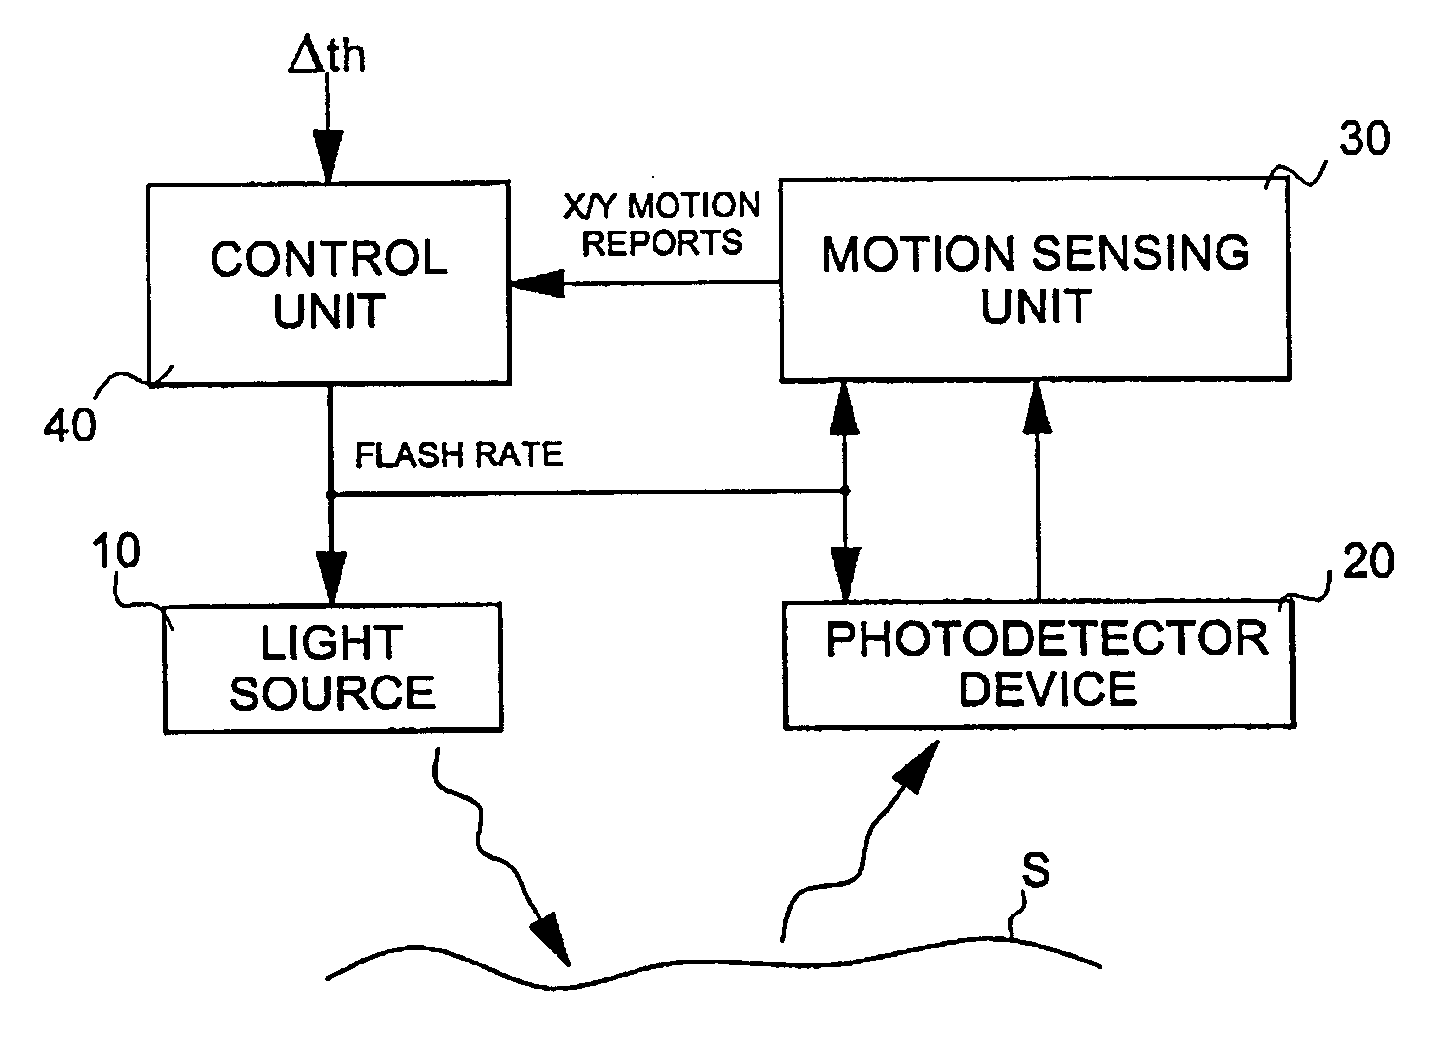 Method of operating an optical motion sensing device and optical motion sensing device implementing this method